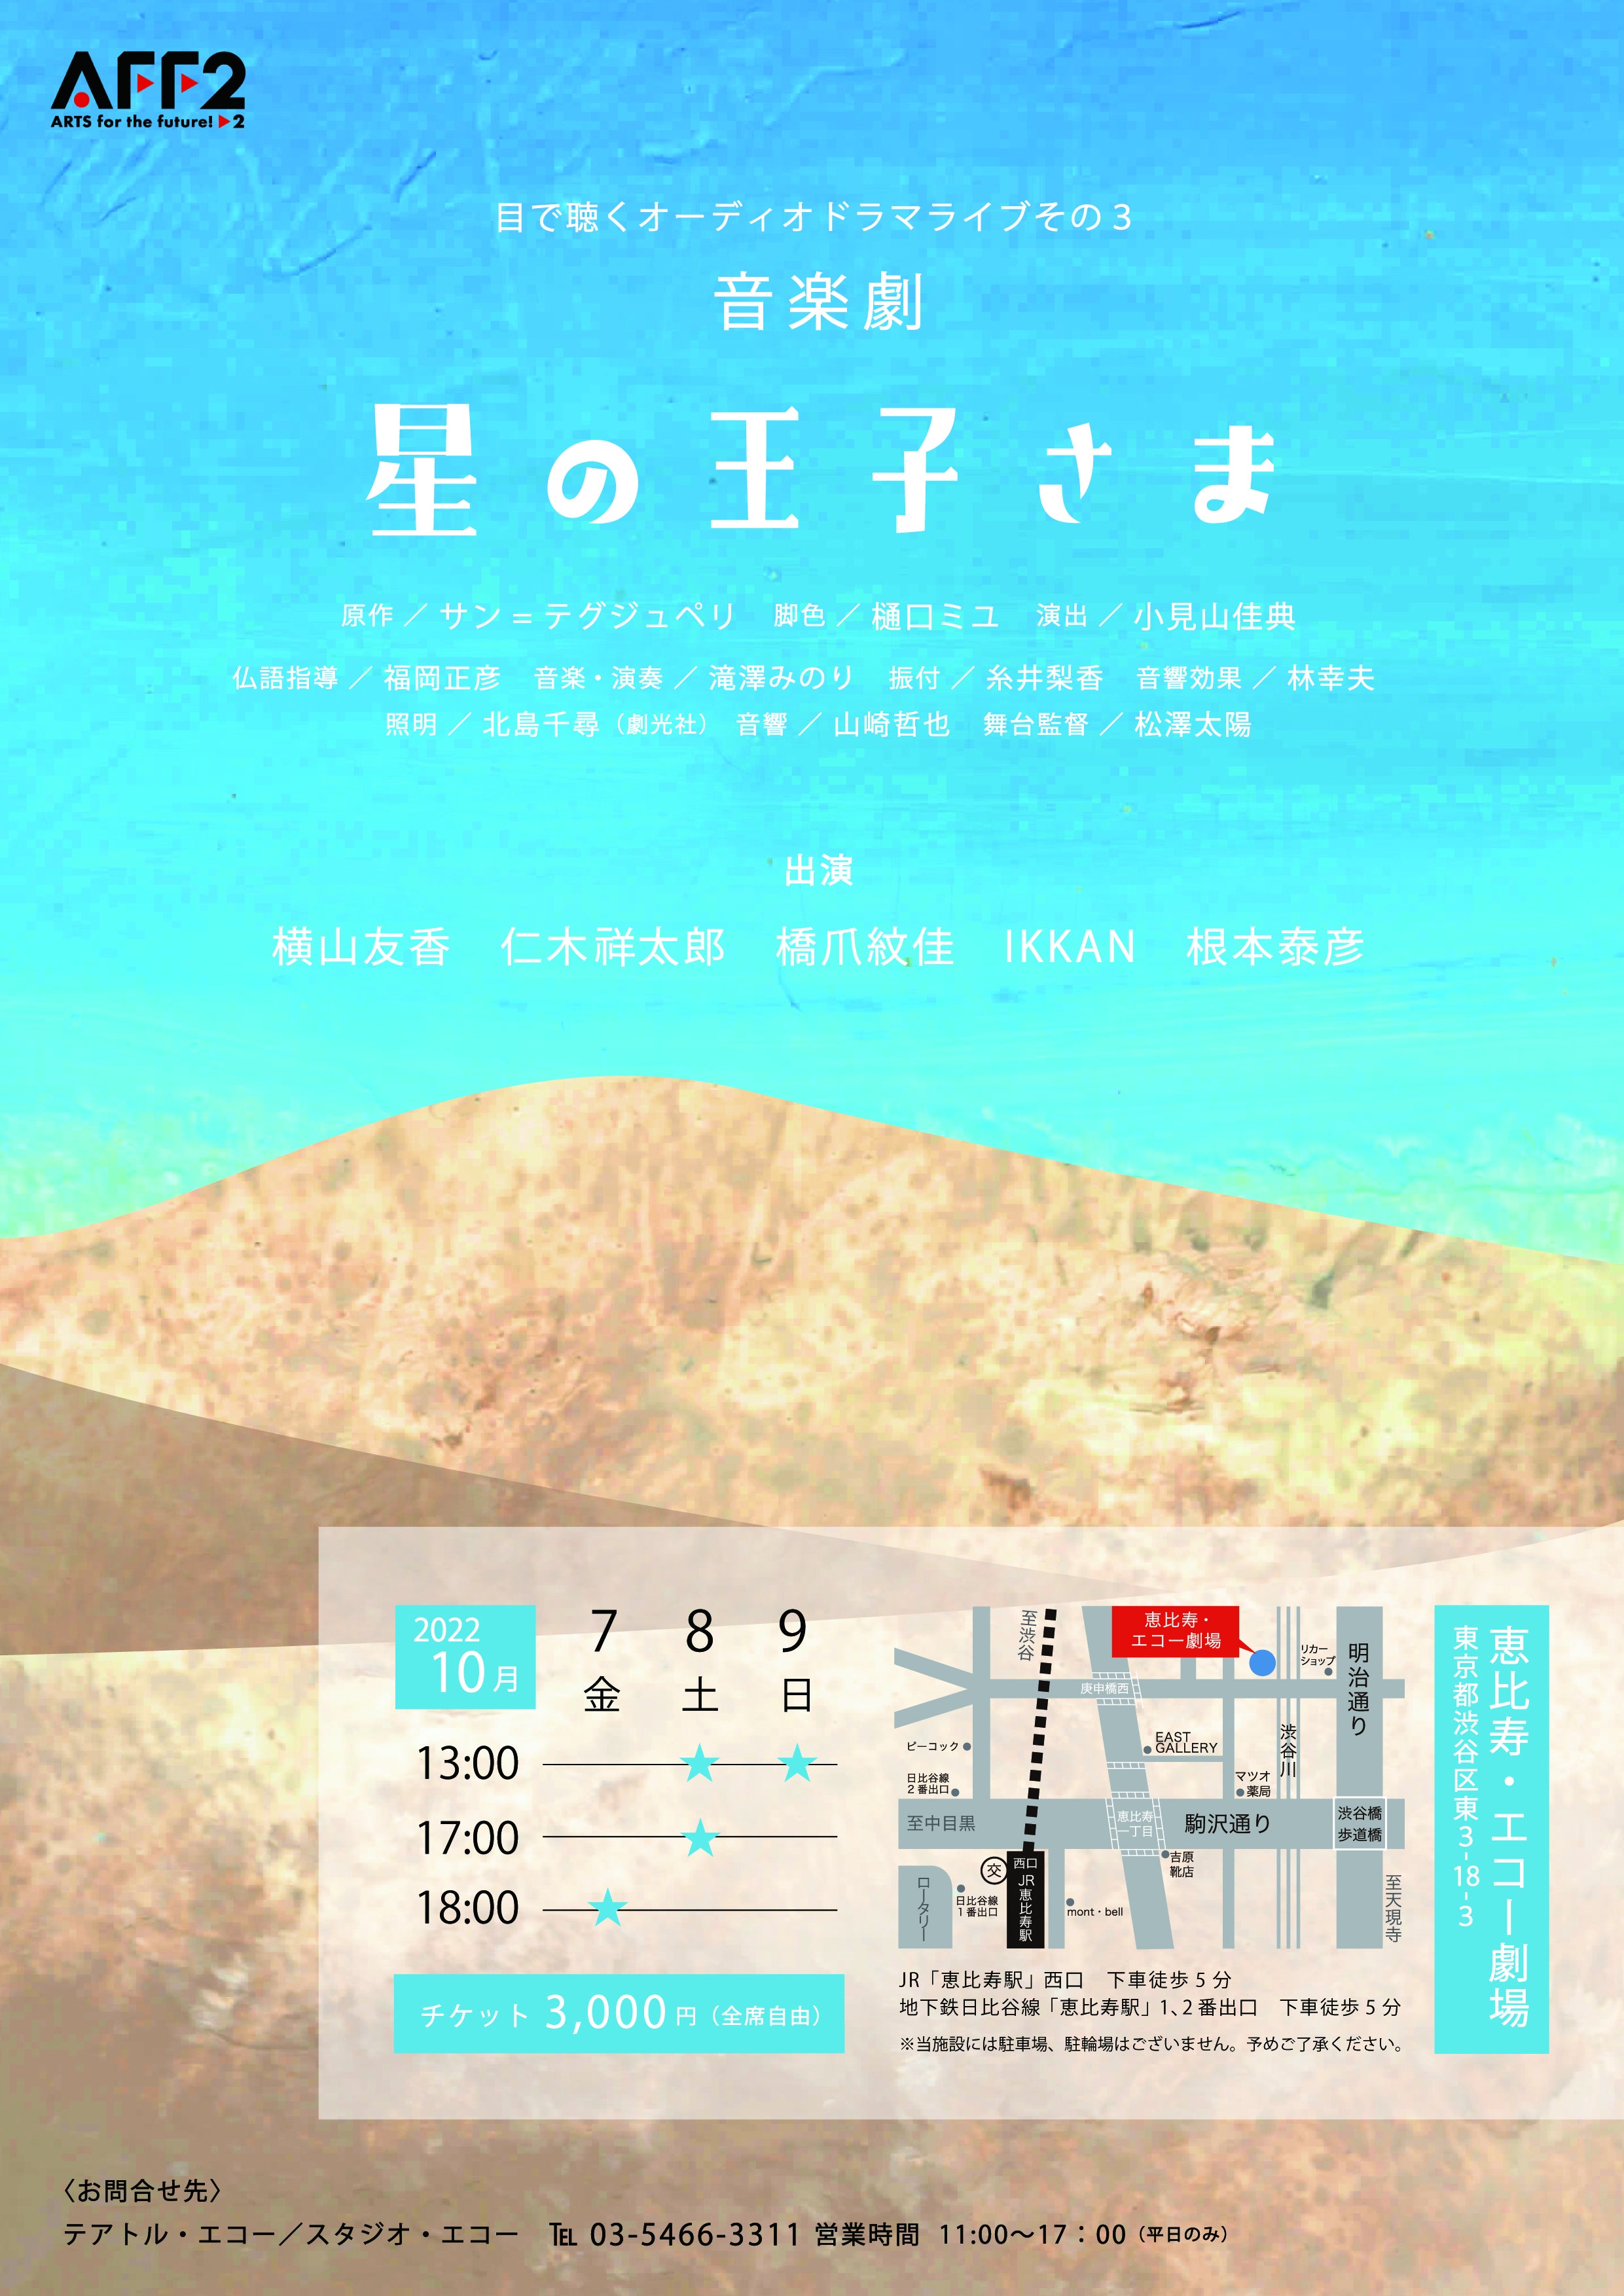 星の王子さま 星の王子様 朗読劇 オーケストラ DVD log-cabin.jp